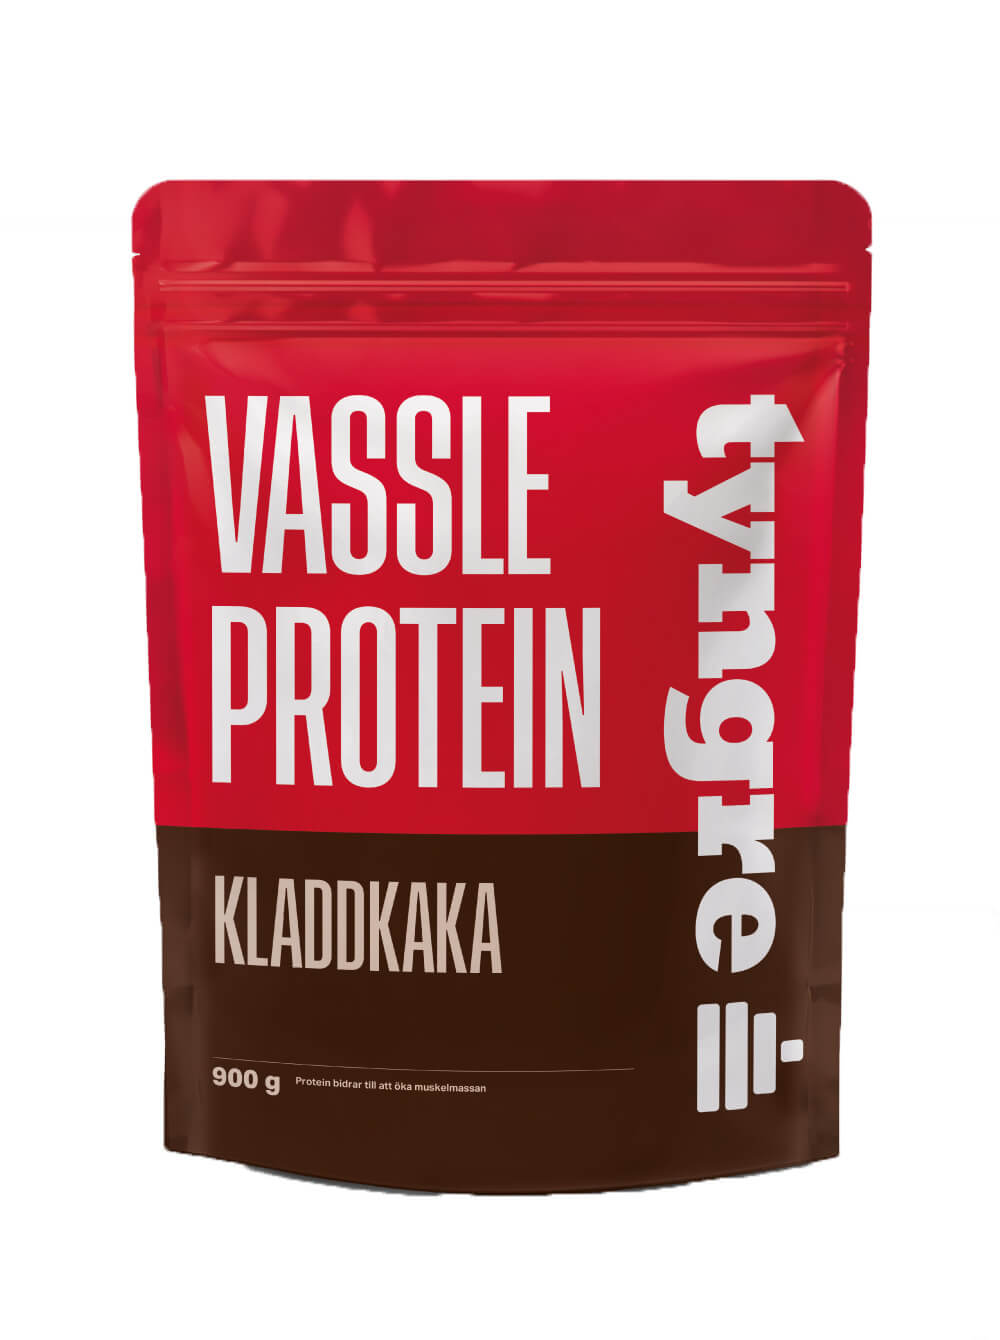 Tyngre Vassleprotein - Kladdkaka 900g